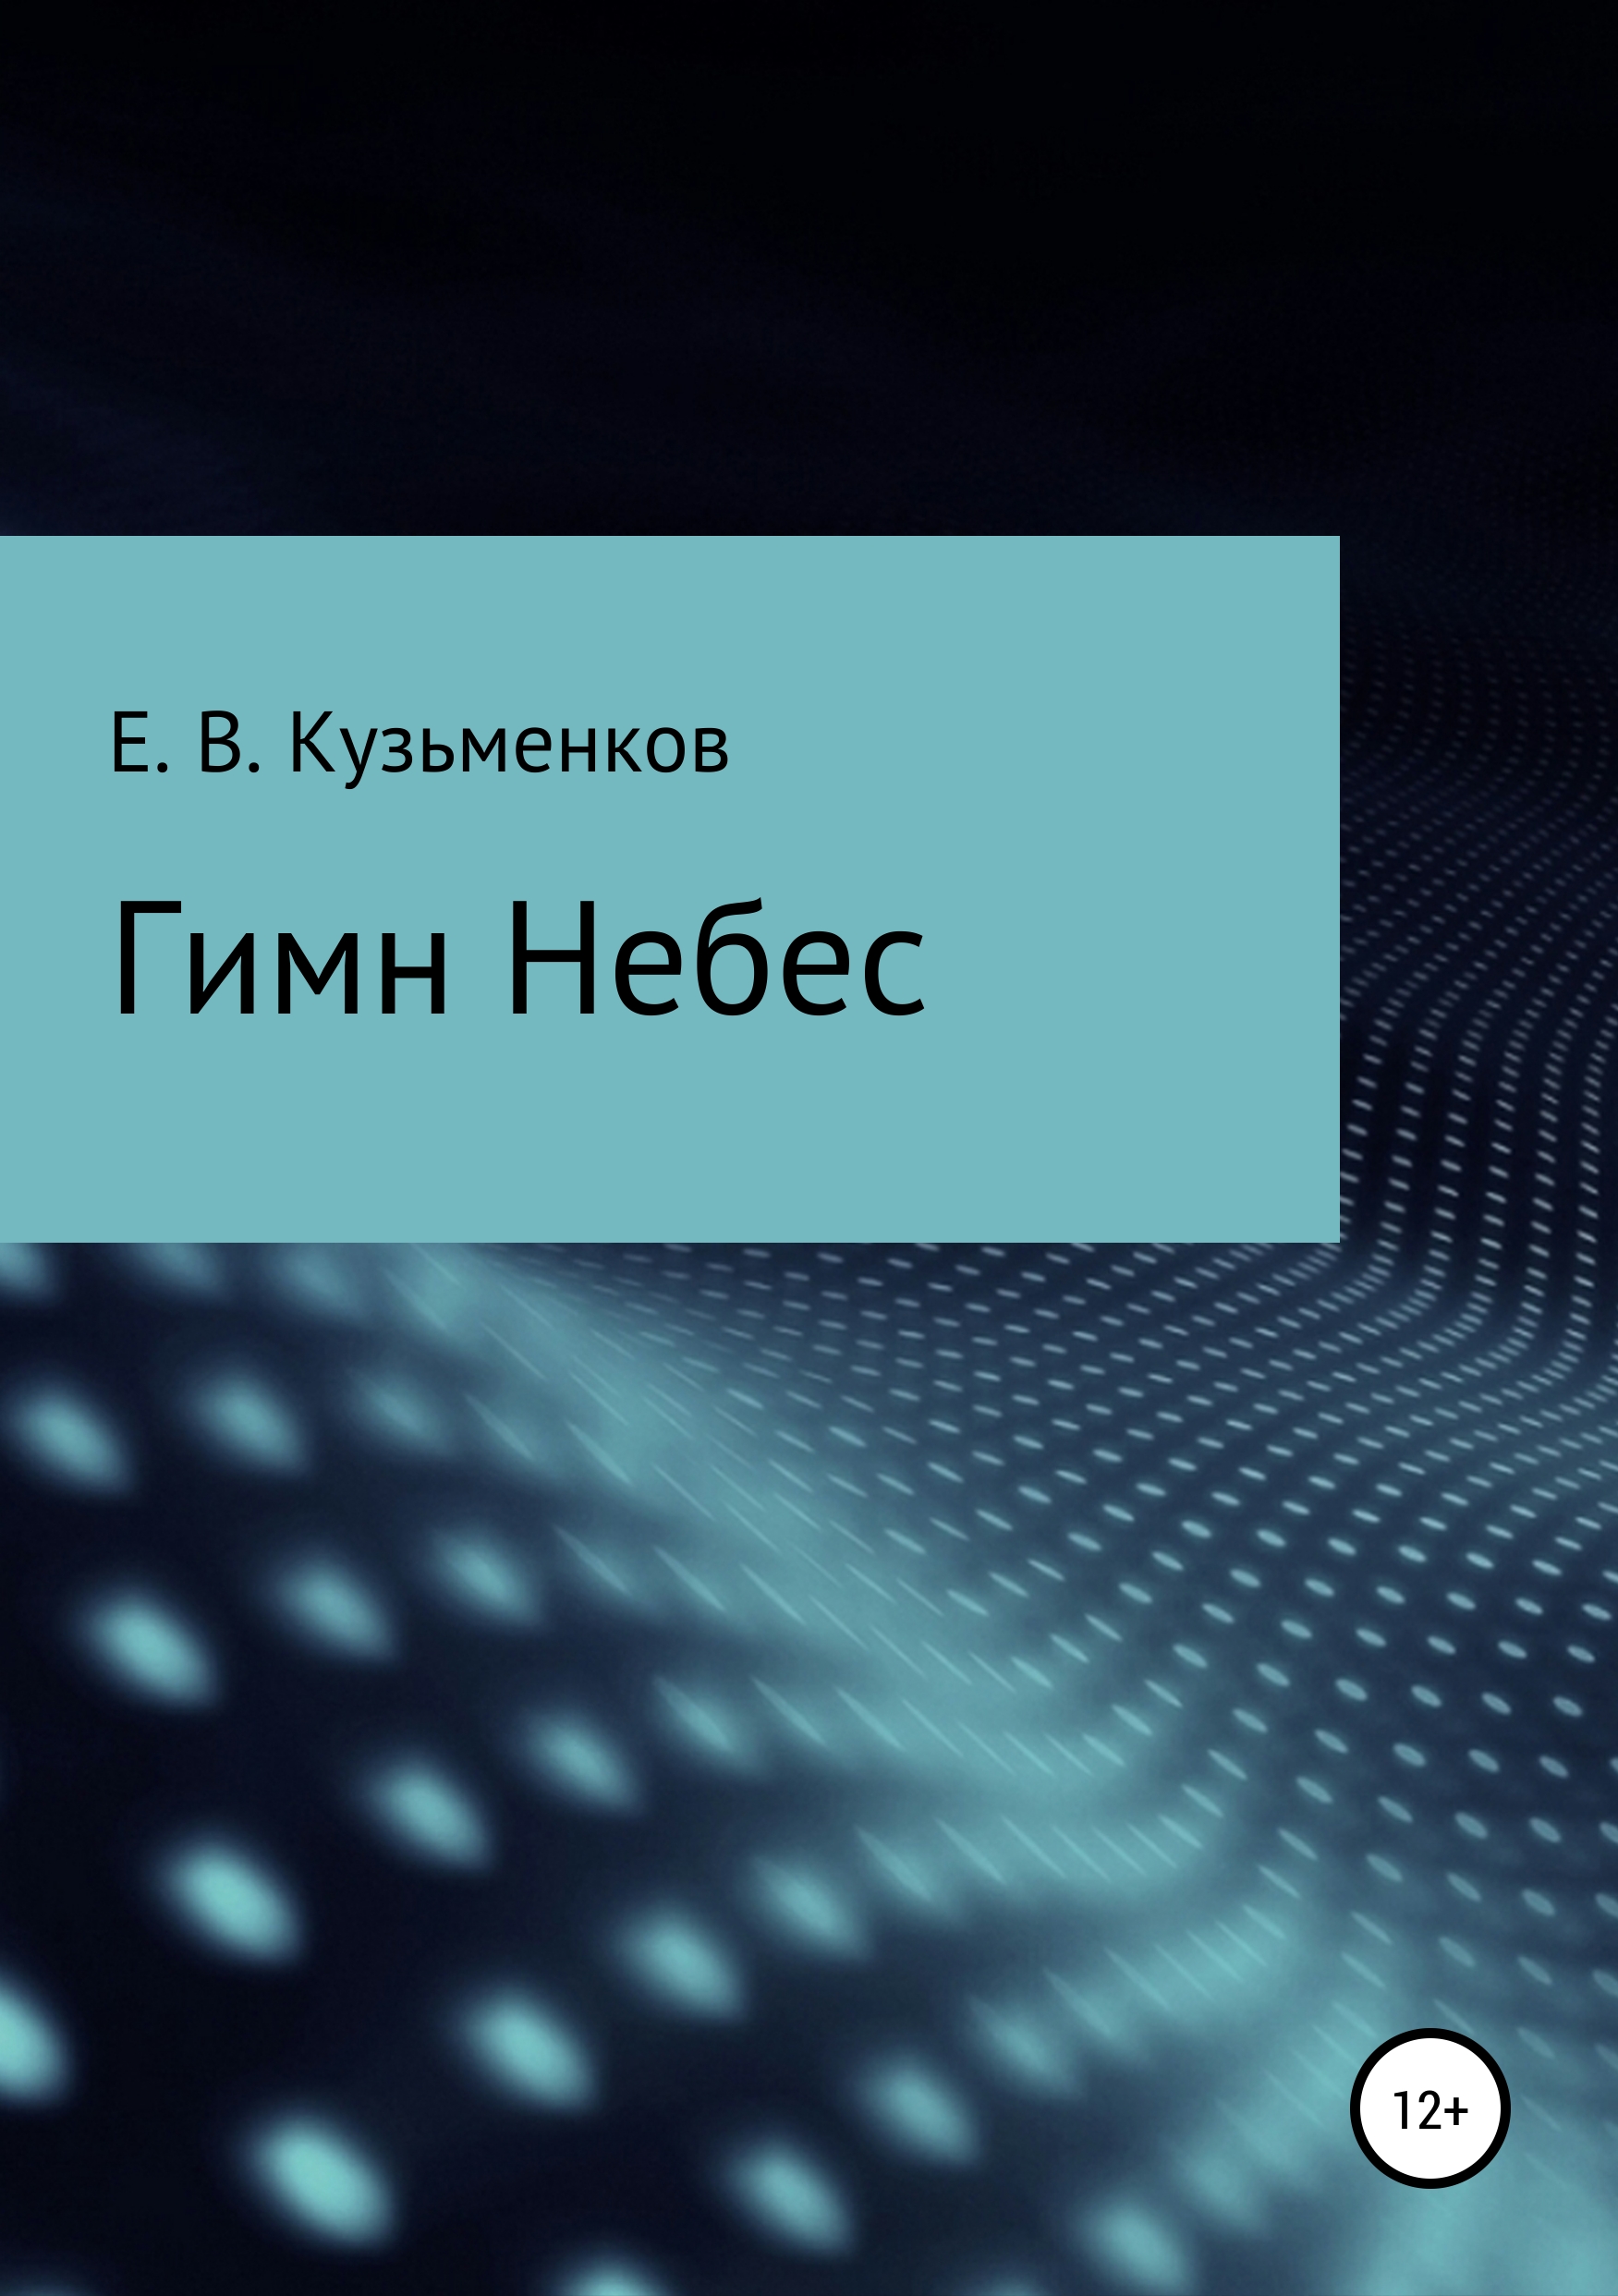 Книга Гимн Небес из серии , созданная Евгений Кузьменков, может относится к жанру Физика. Стоимость книги Гимн Небес  с идентификатором 39851347 составляет 49.90 руб.